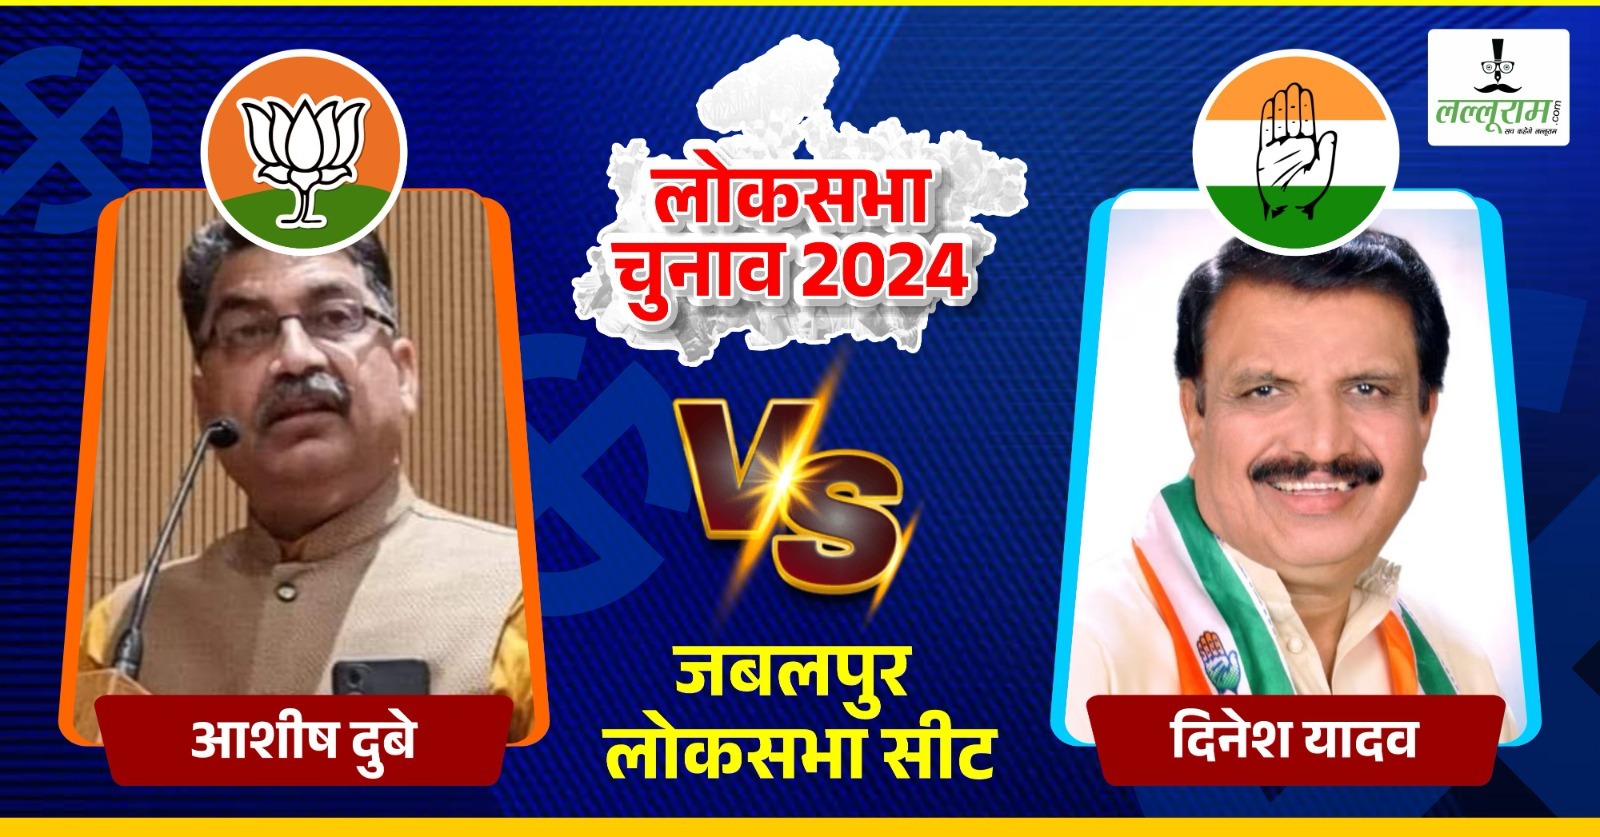 Lok Sabha Election First Phase: जबलपुर की सत्ता में कौन होगा काबिज, BJP के आशीष दुबे या कांग्रेस के दिनेश यादव, मतदान जारी, अब 4 जून की बारी